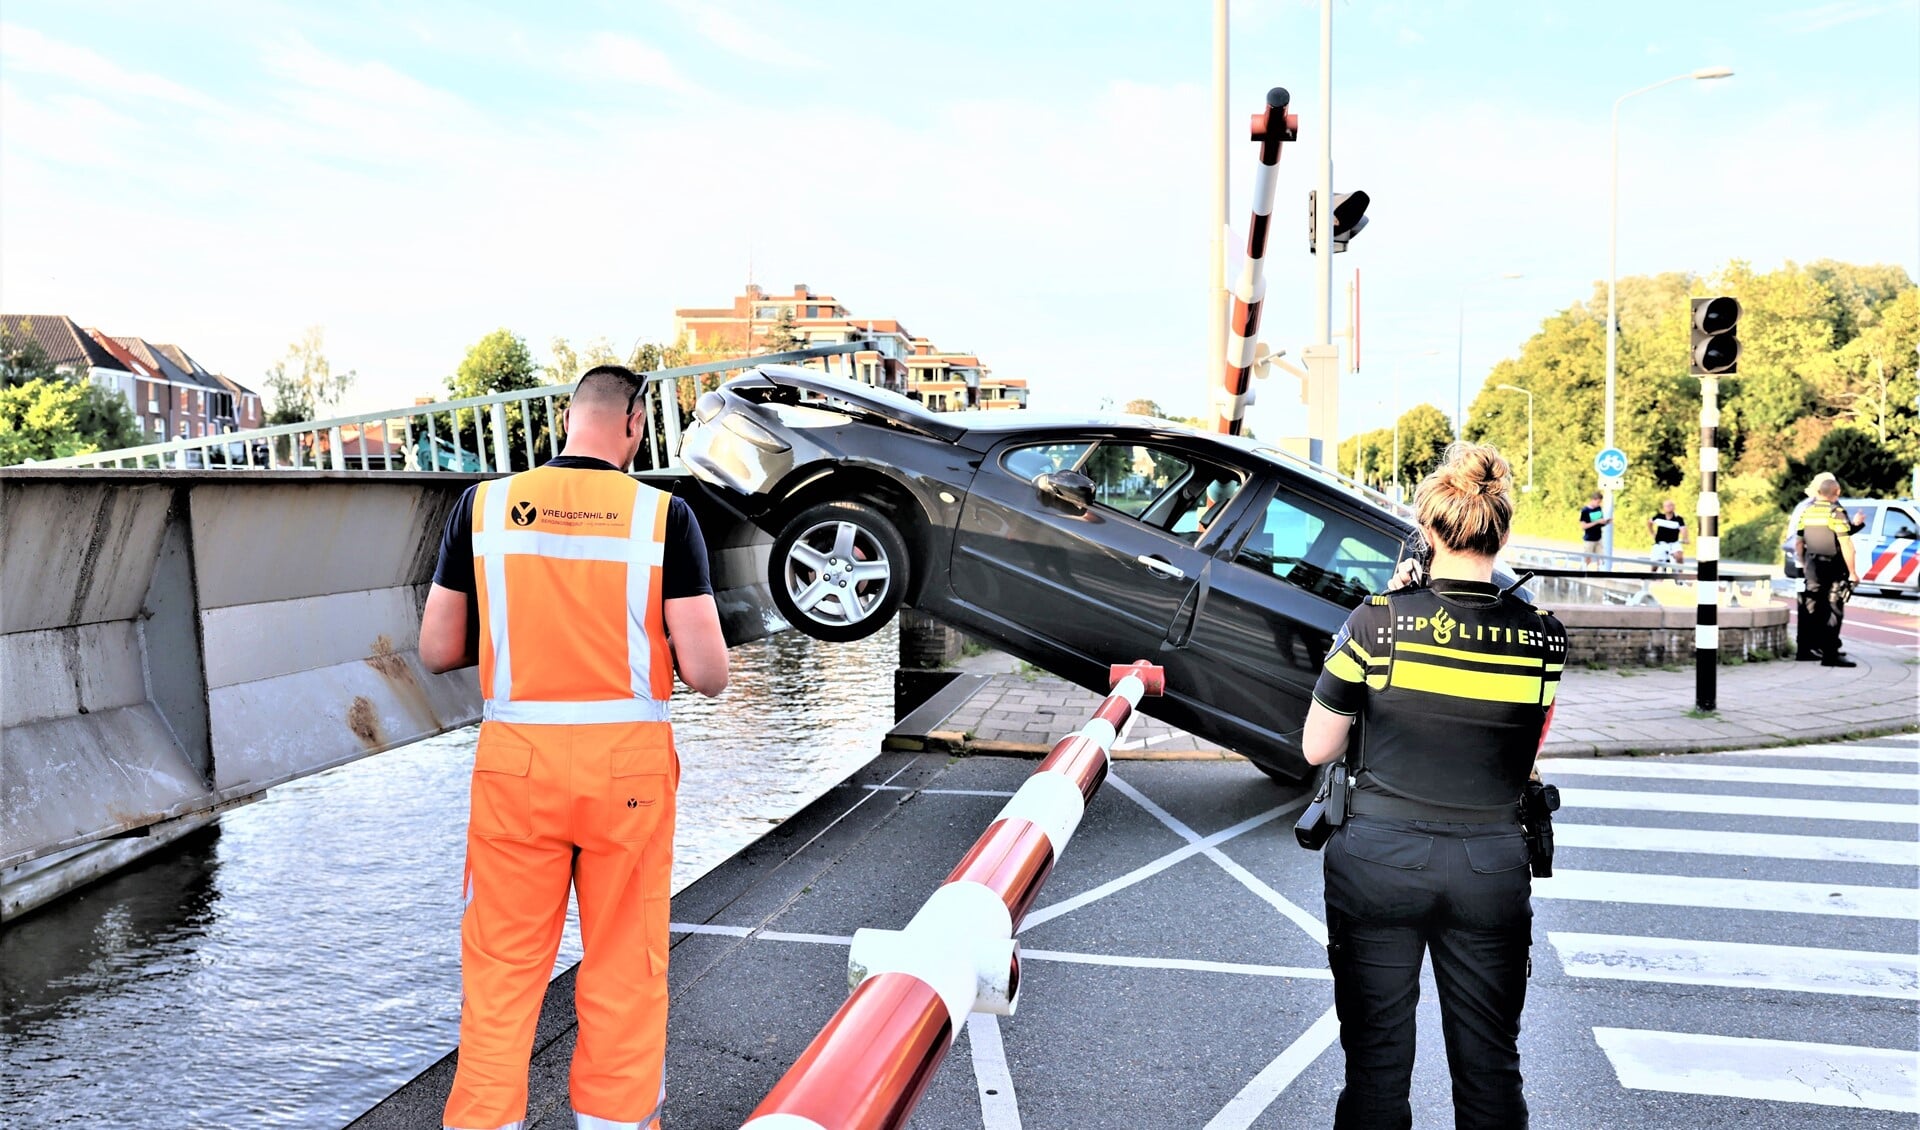 De auto reed onder de slagboom door tegen de deels geopende brug. (foto: Sander Paardekooper).